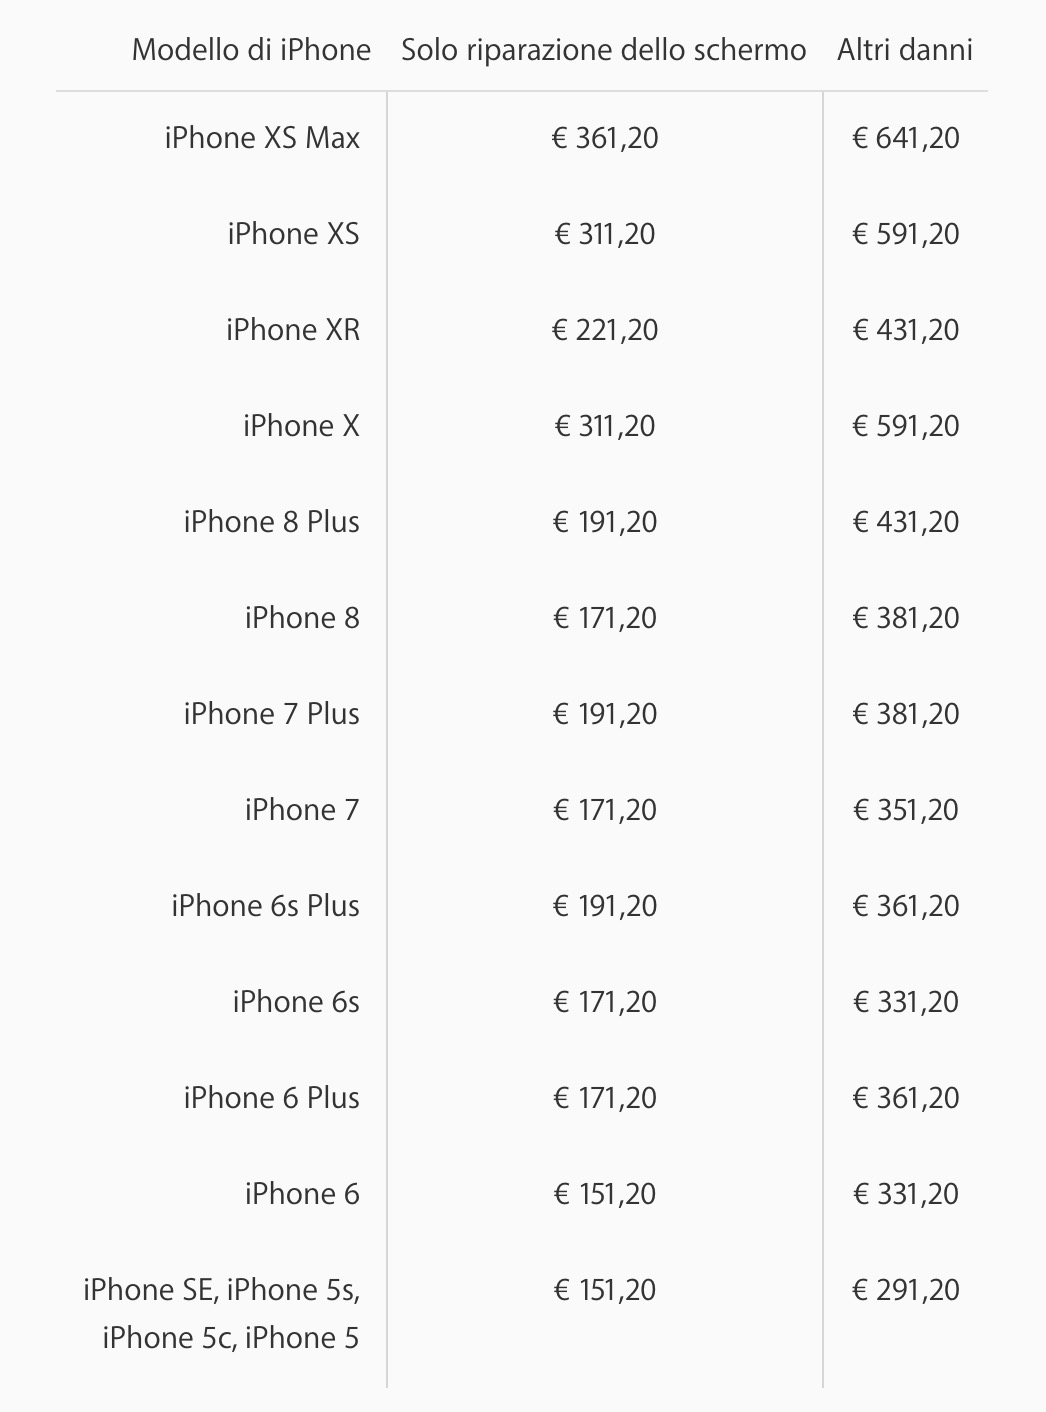 Quanto costa riparare un iPhone fuori garanzia? Ecco i prezzi ufficiali Apple